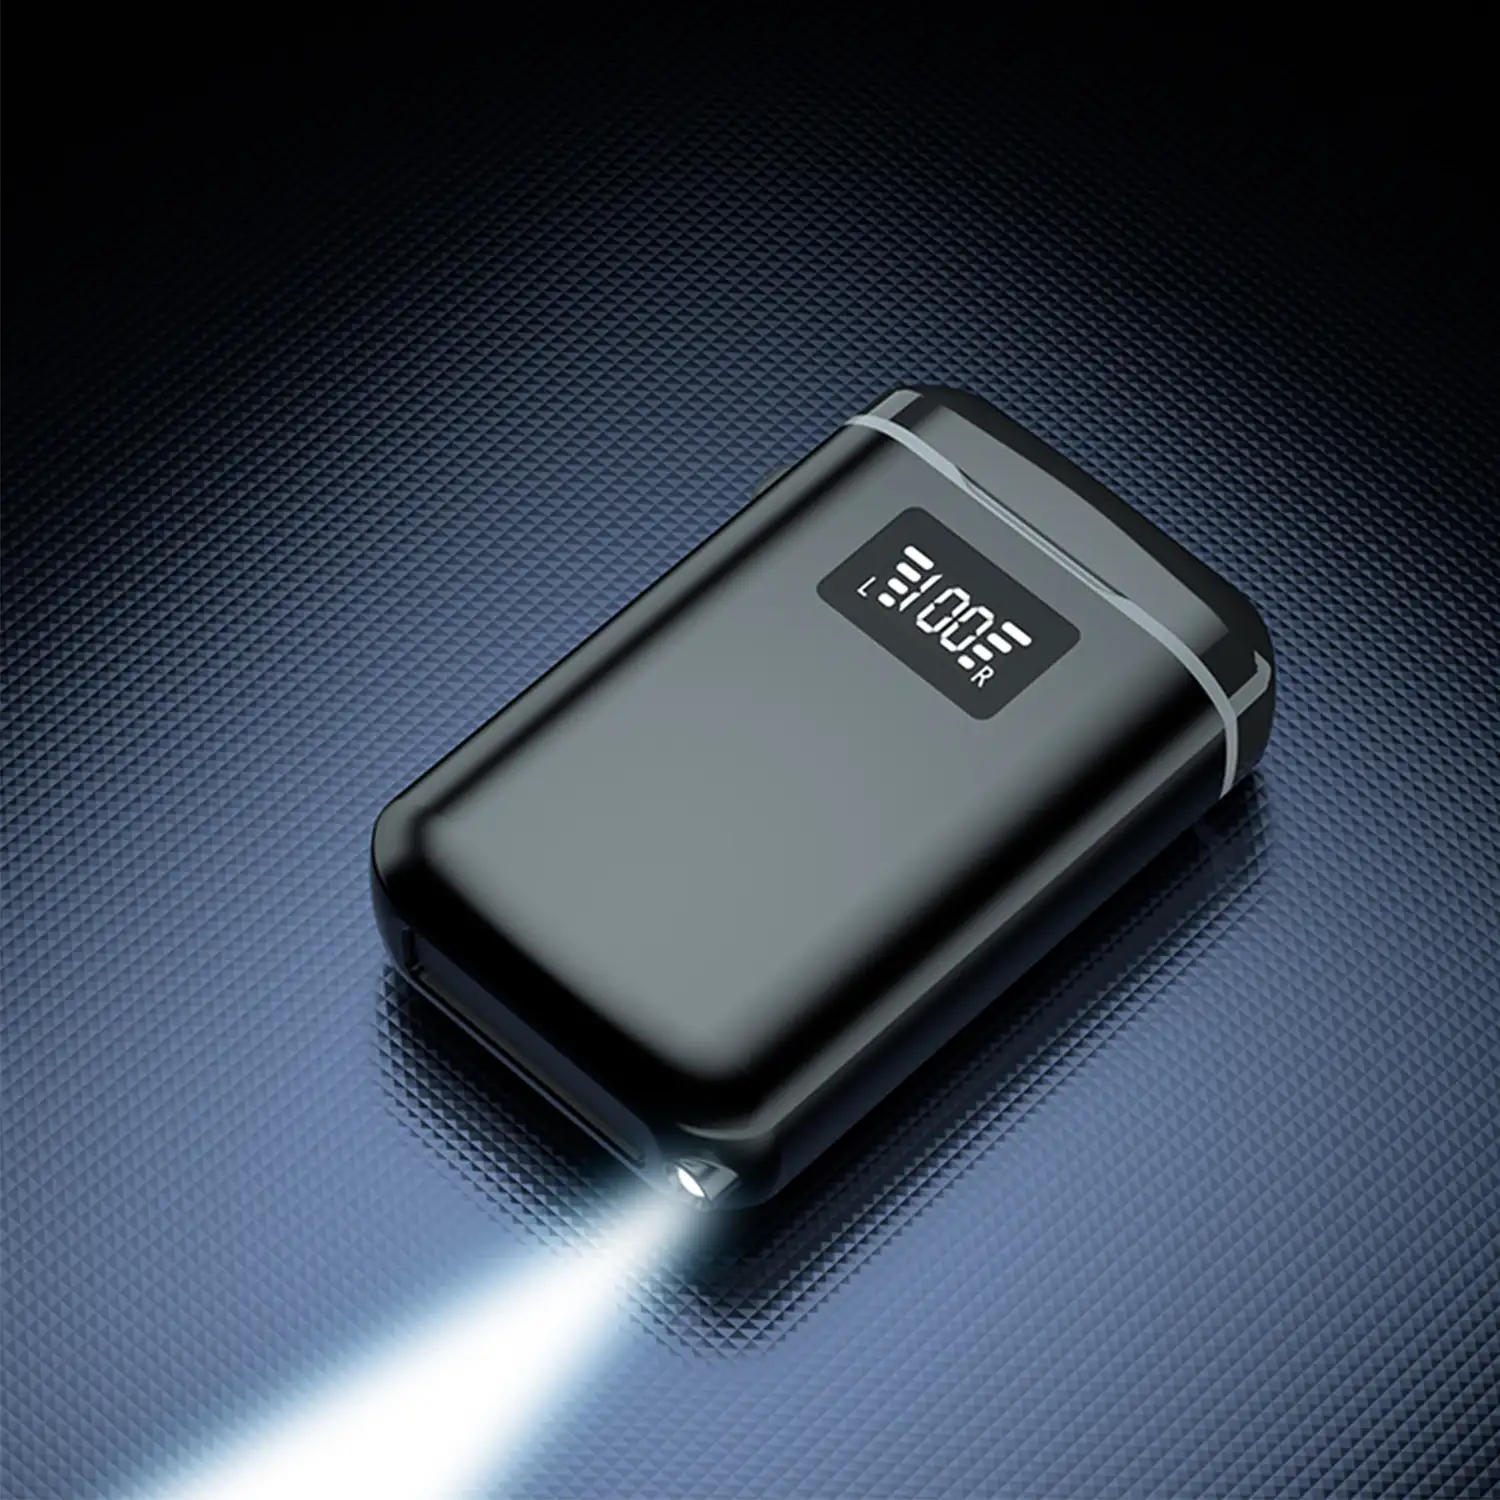 Auriculares TWS M7, Bluetooth 5.1, control táctil. Base de carga de 4000mAh con powerbank USB, linterna y pantalla indicadora de carga.